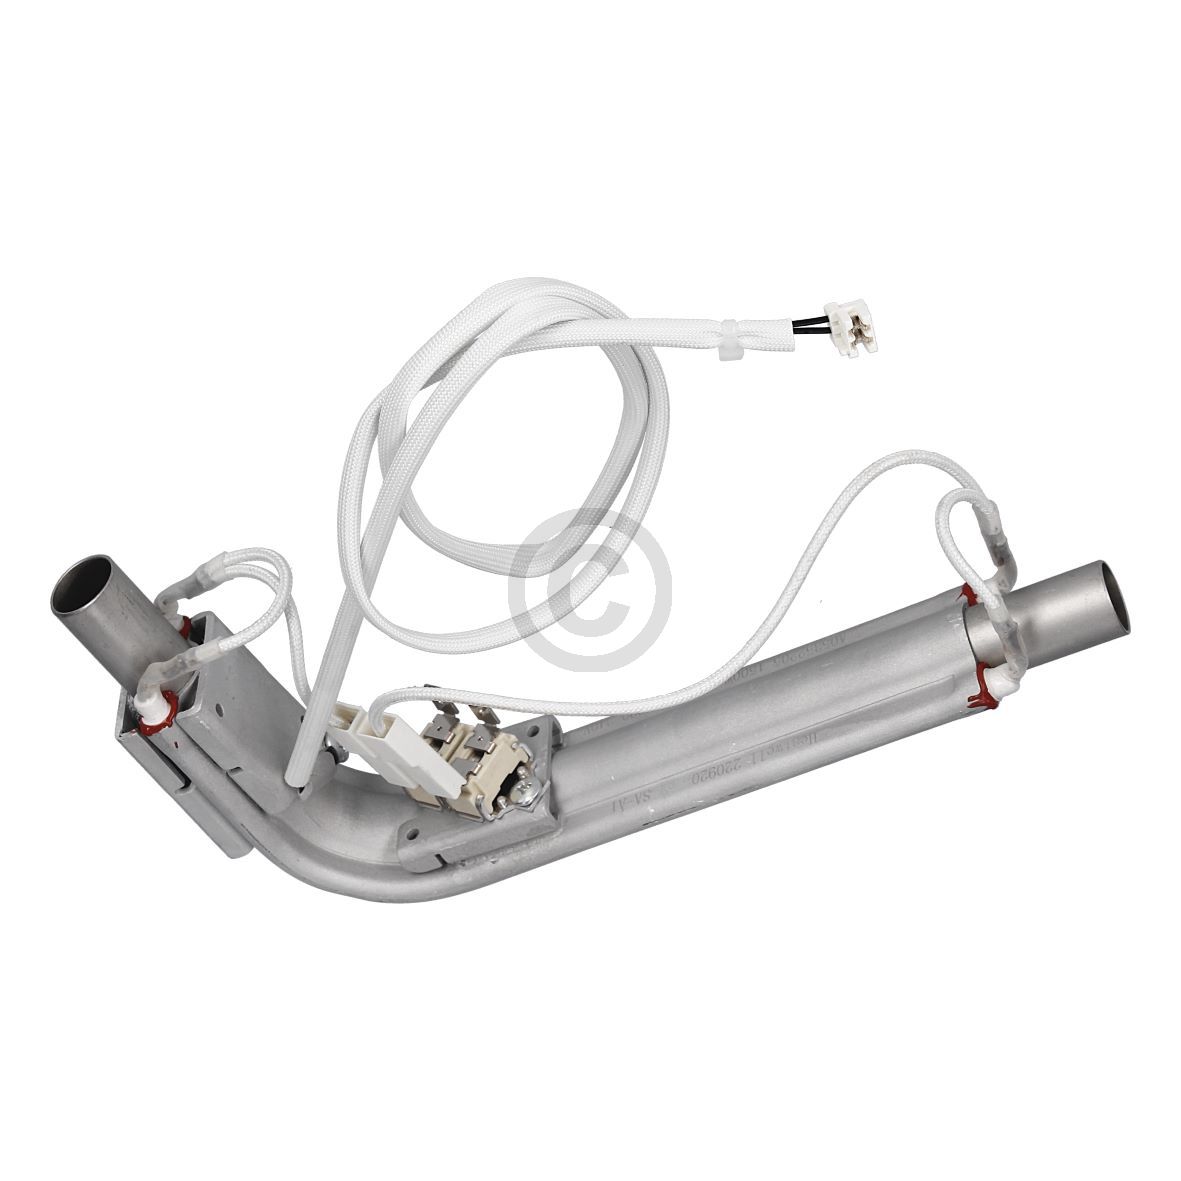 Dampfgenerator kompatibel mit AEG 140053522011 für Dampfbackofen